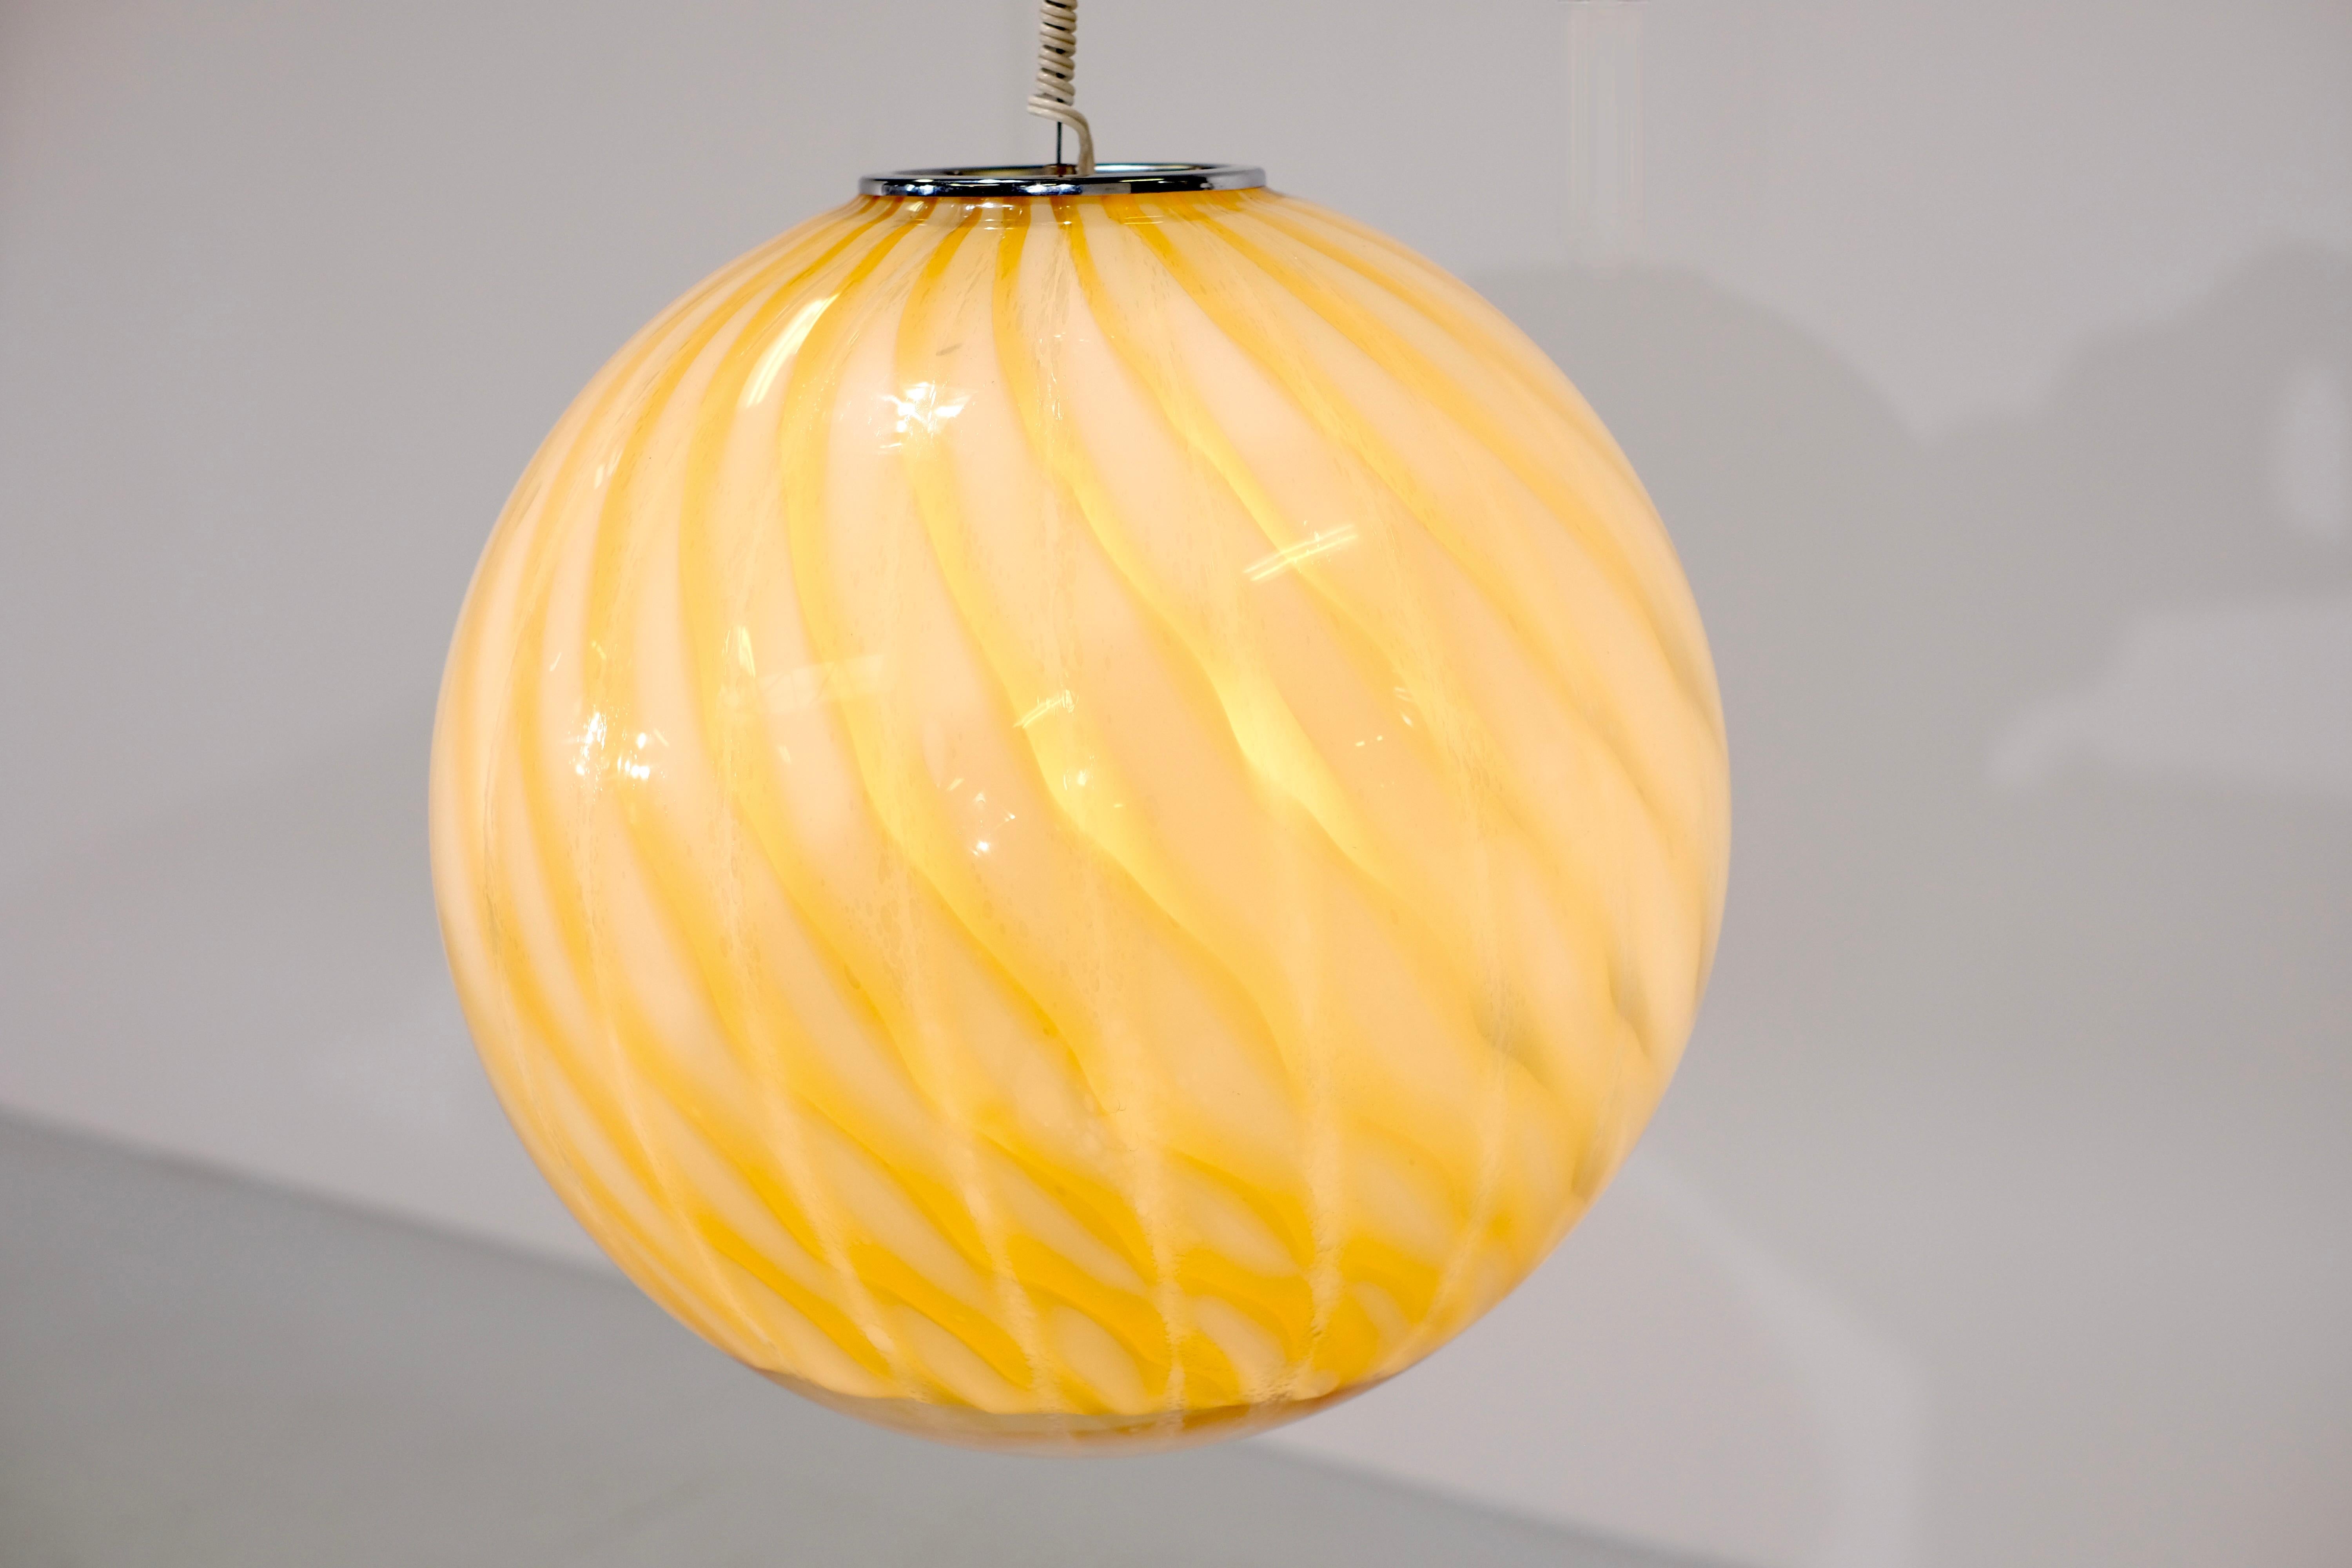 Erstaunliche kugelförmige Murano-Glas-Pendelleuchte, die Venini in den 1960er Jahren zugeschrieben wird.

Diese Hängelampe ist in einem wirklich tollen Vintage-Zustand und hat keine Schäden.
Der Farbverlauf der Muster bietet ein herrliches und